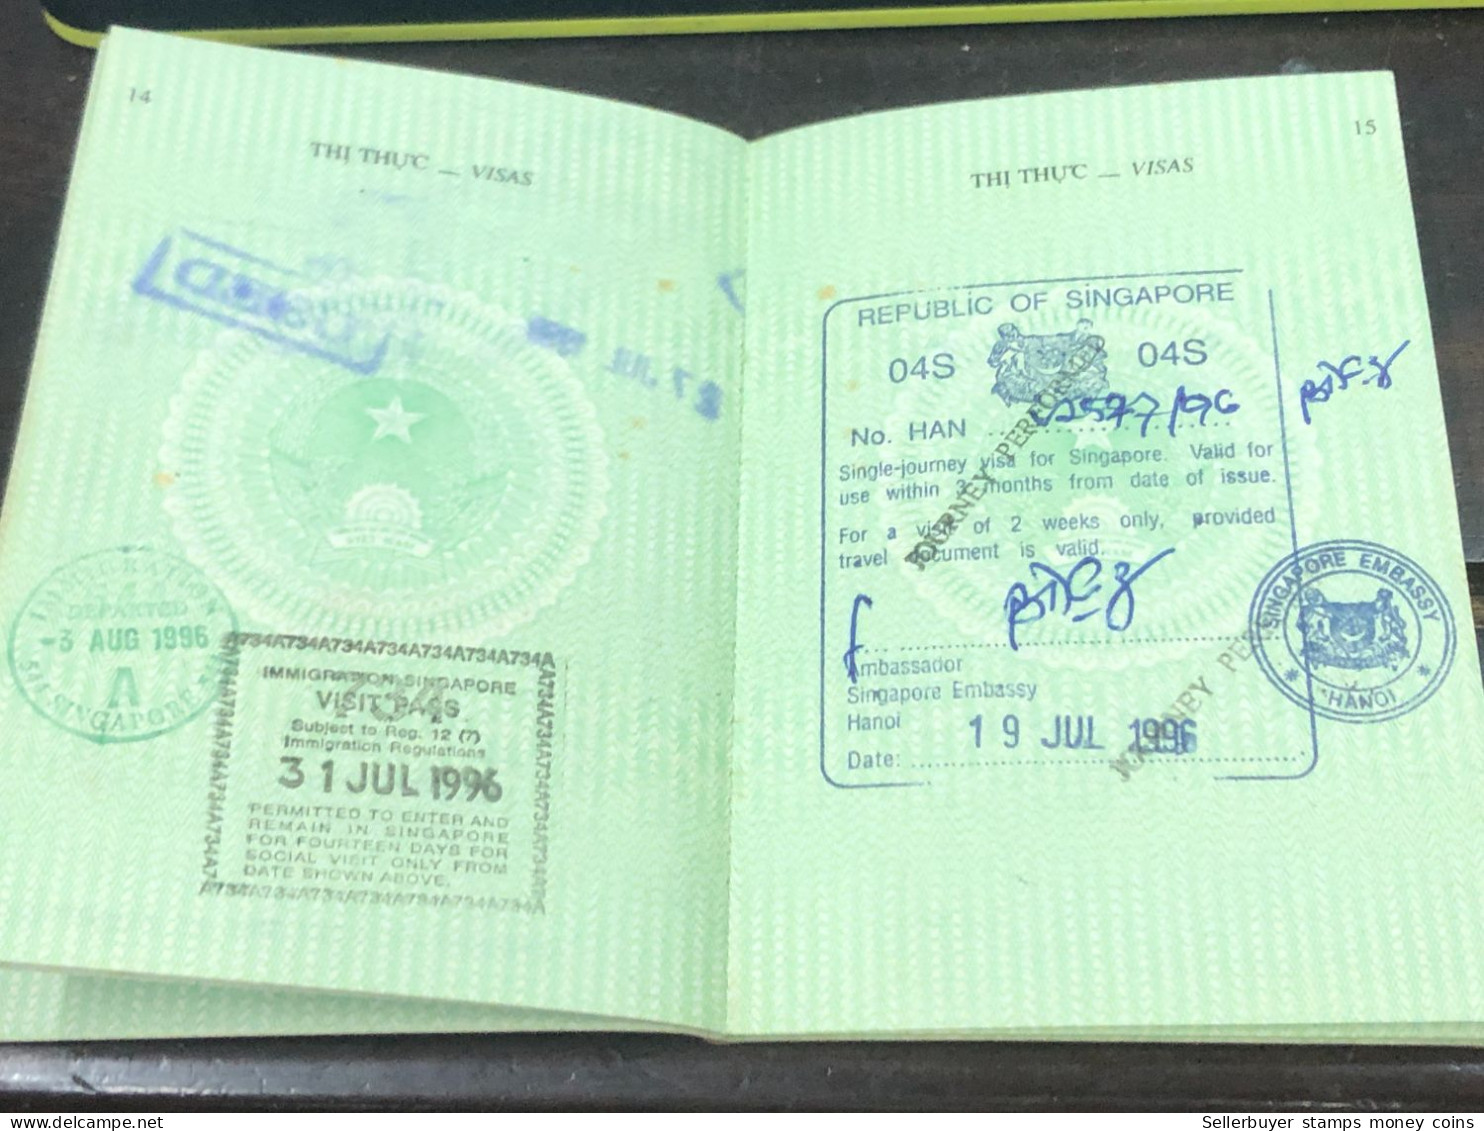 VIET NAM -OLD-ID PASSPORT-name-TRUONG LAM DUC-2001-1pcs Book - Sammlungen